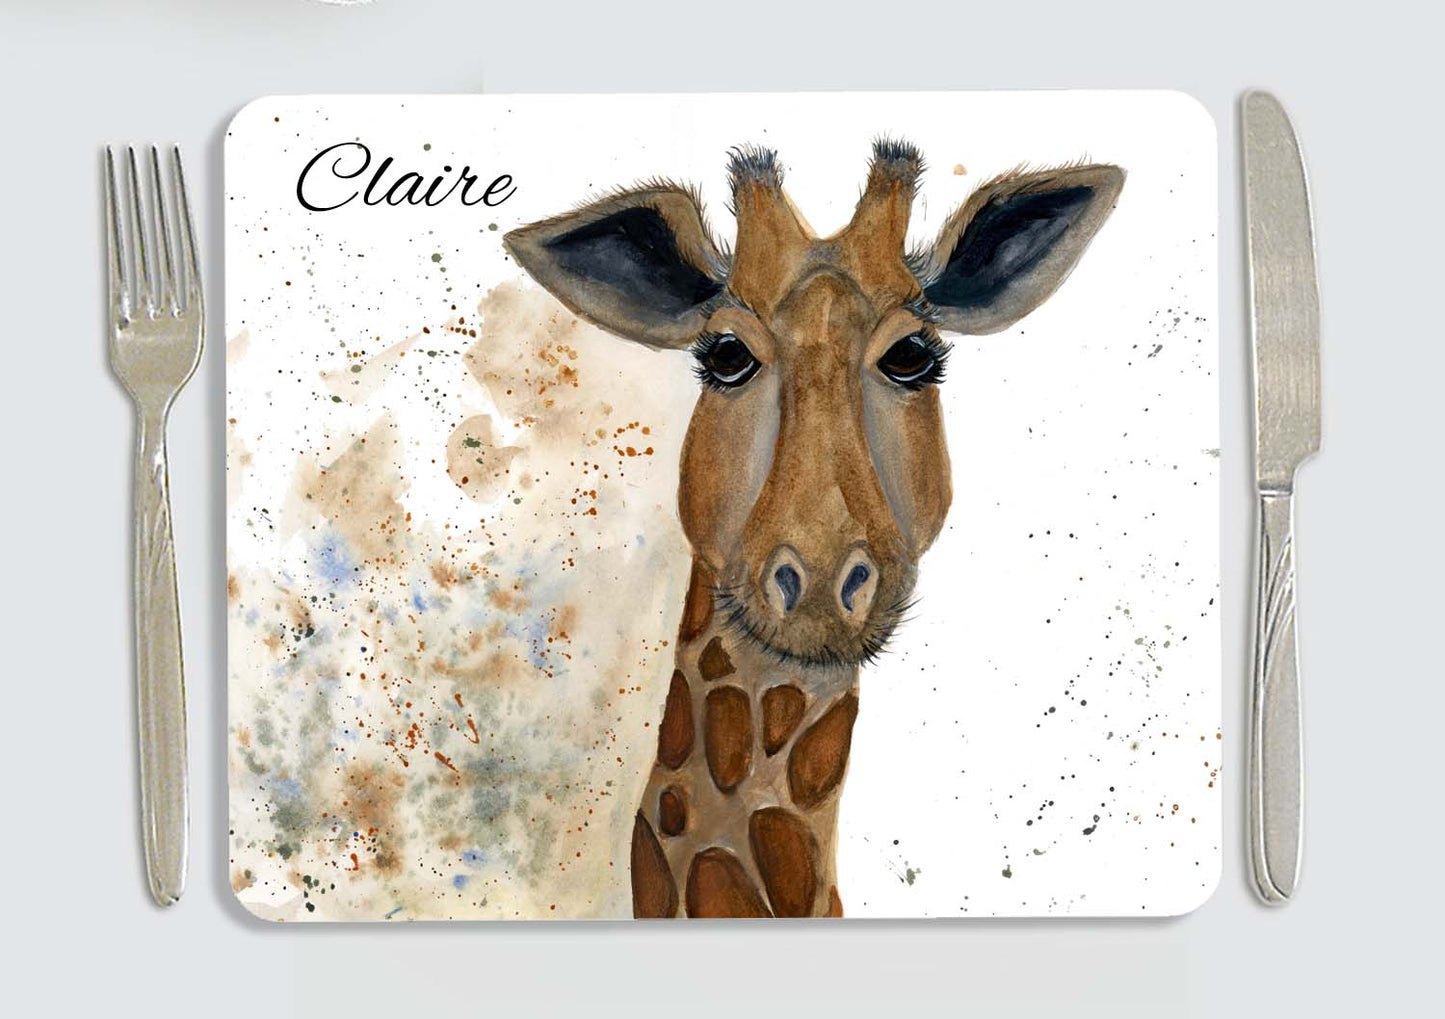 Giraffe coaster